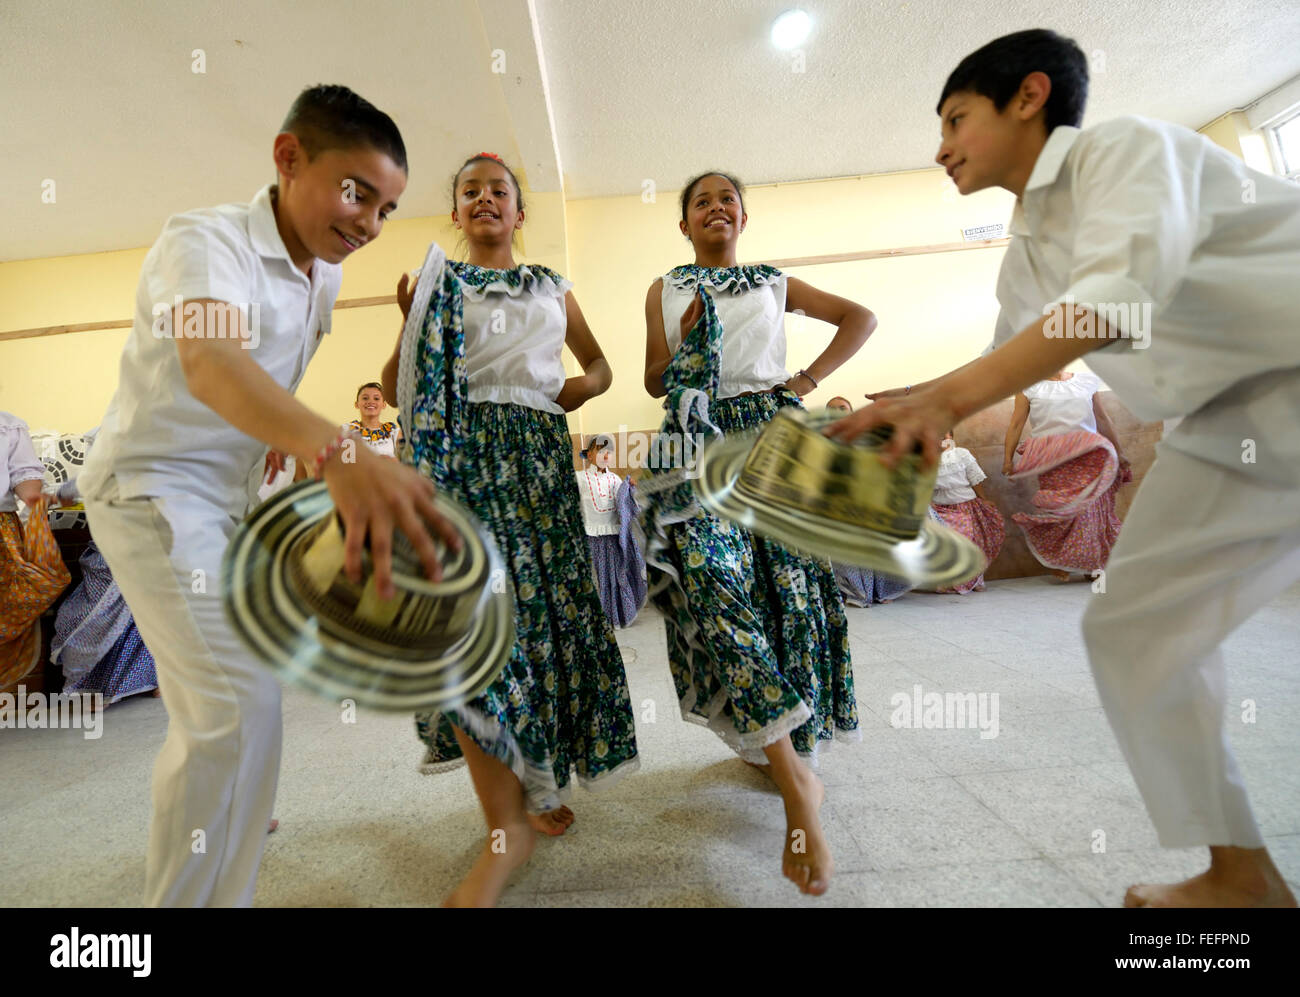 Kinder, Mädchen und jungen, dance Gruppe, Volkstanz, traditionelle Tänze, Barrio San Martín, Bogotá, Kolumbien Stockfoto